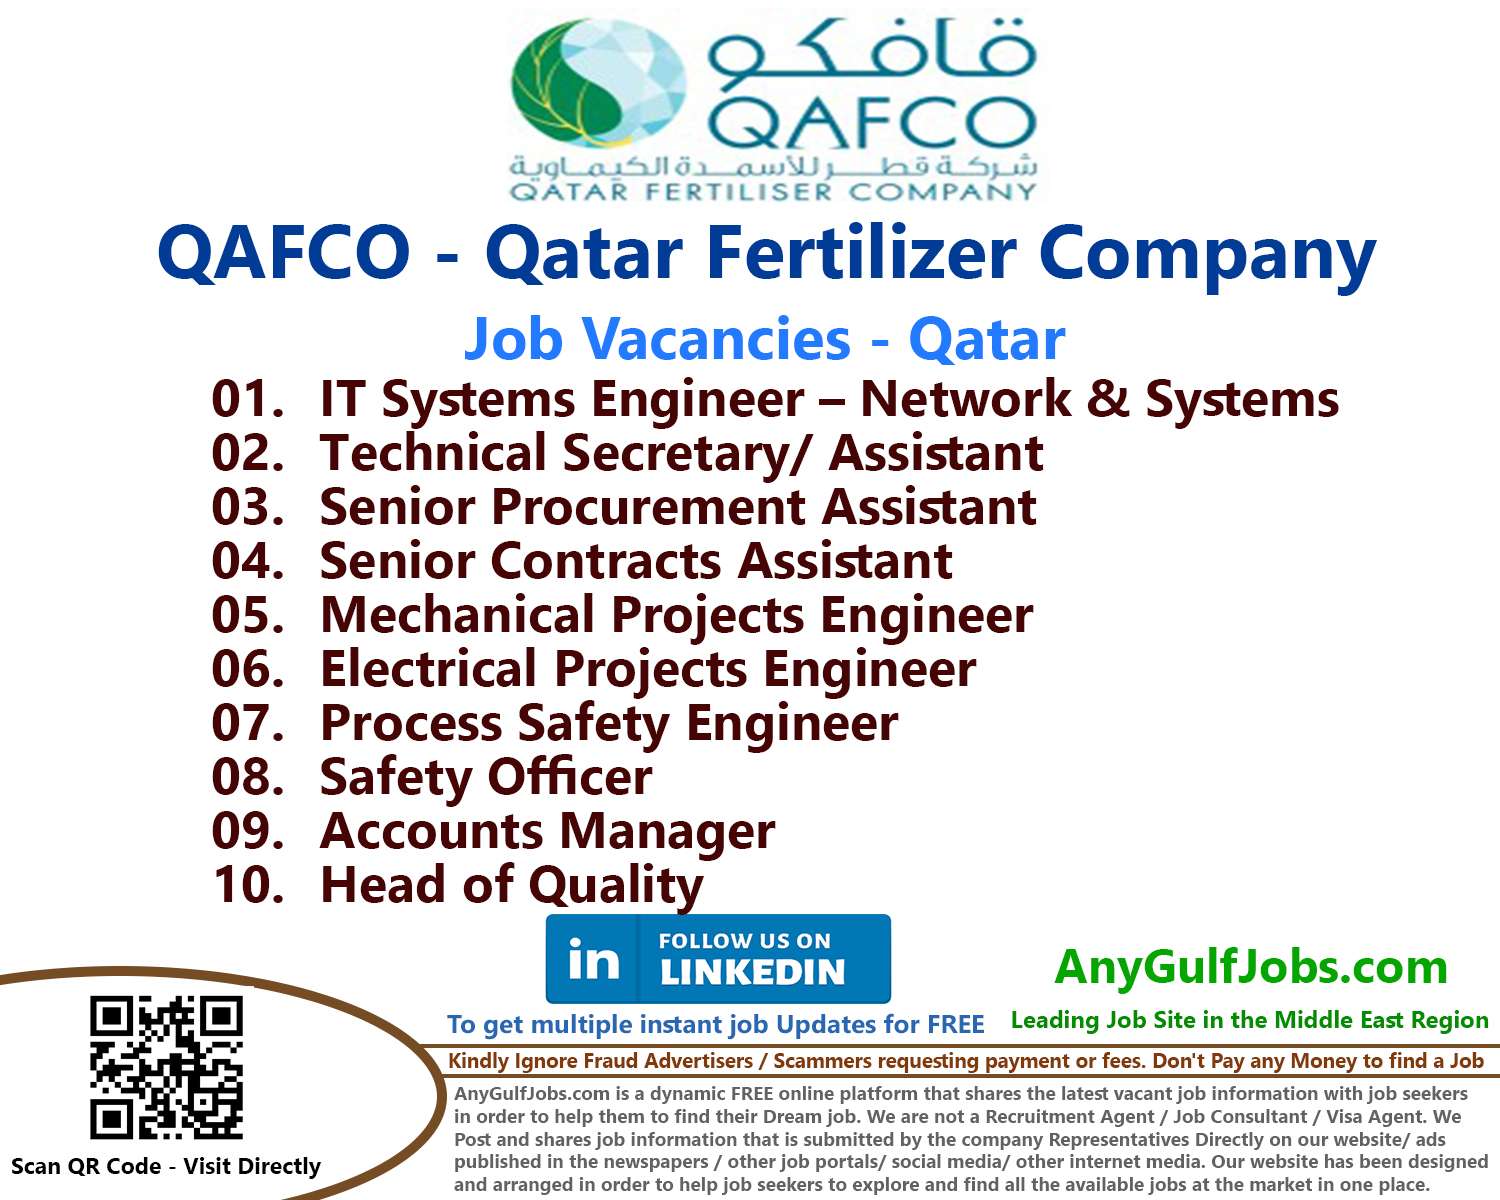 List of QAFCO - Qatar Fertilizer Company Jobs - Qatar